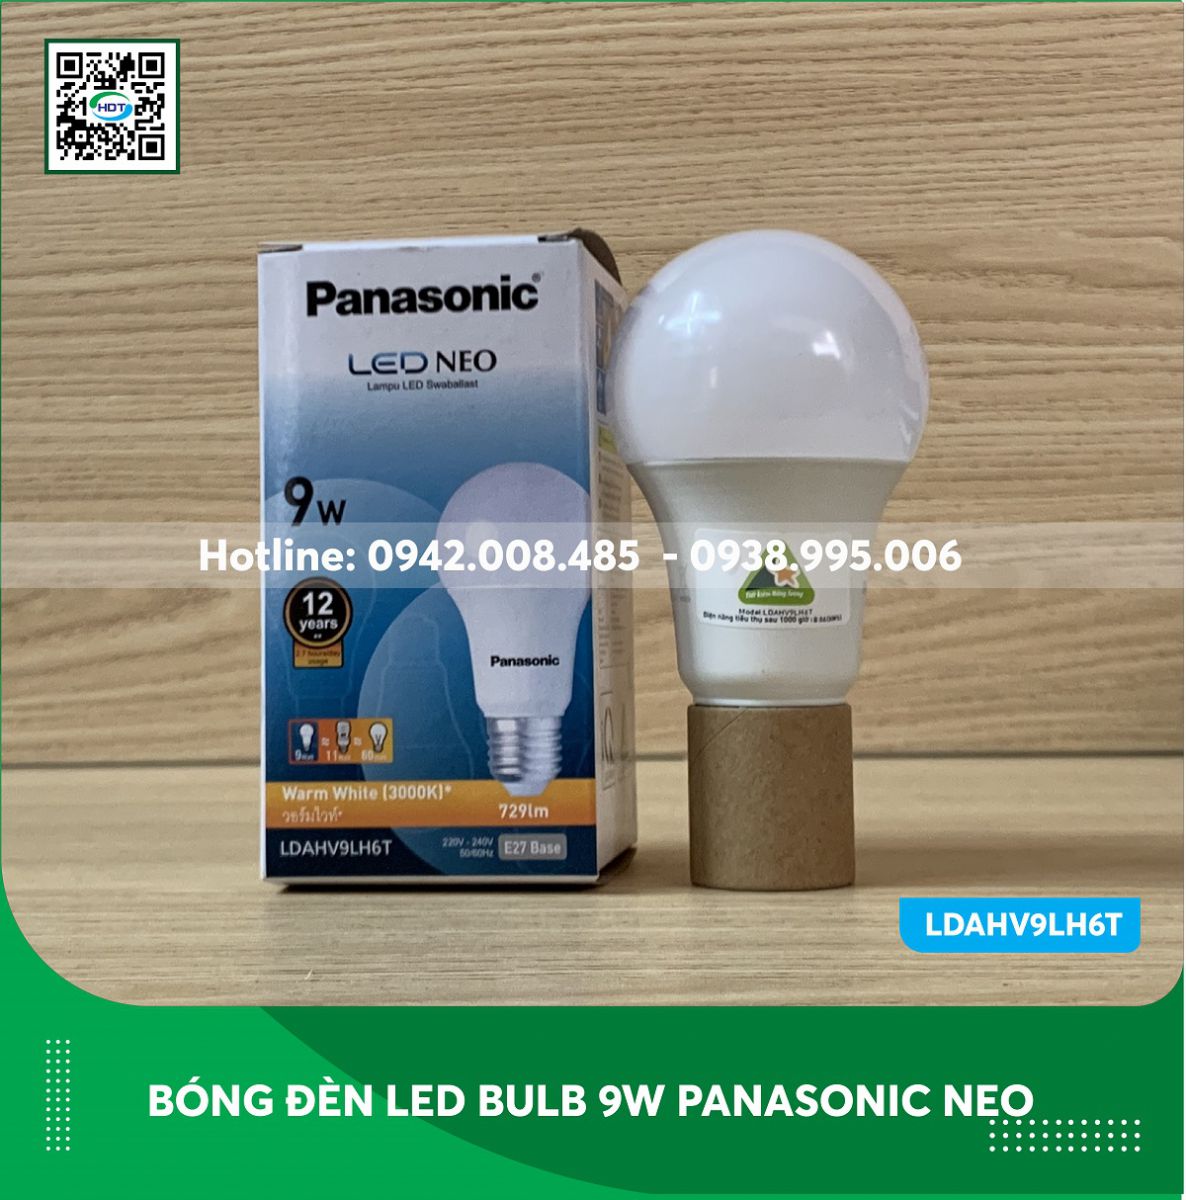 Bóng đèn led bulb 9w Panasonic Neo LDAHV9LH6T